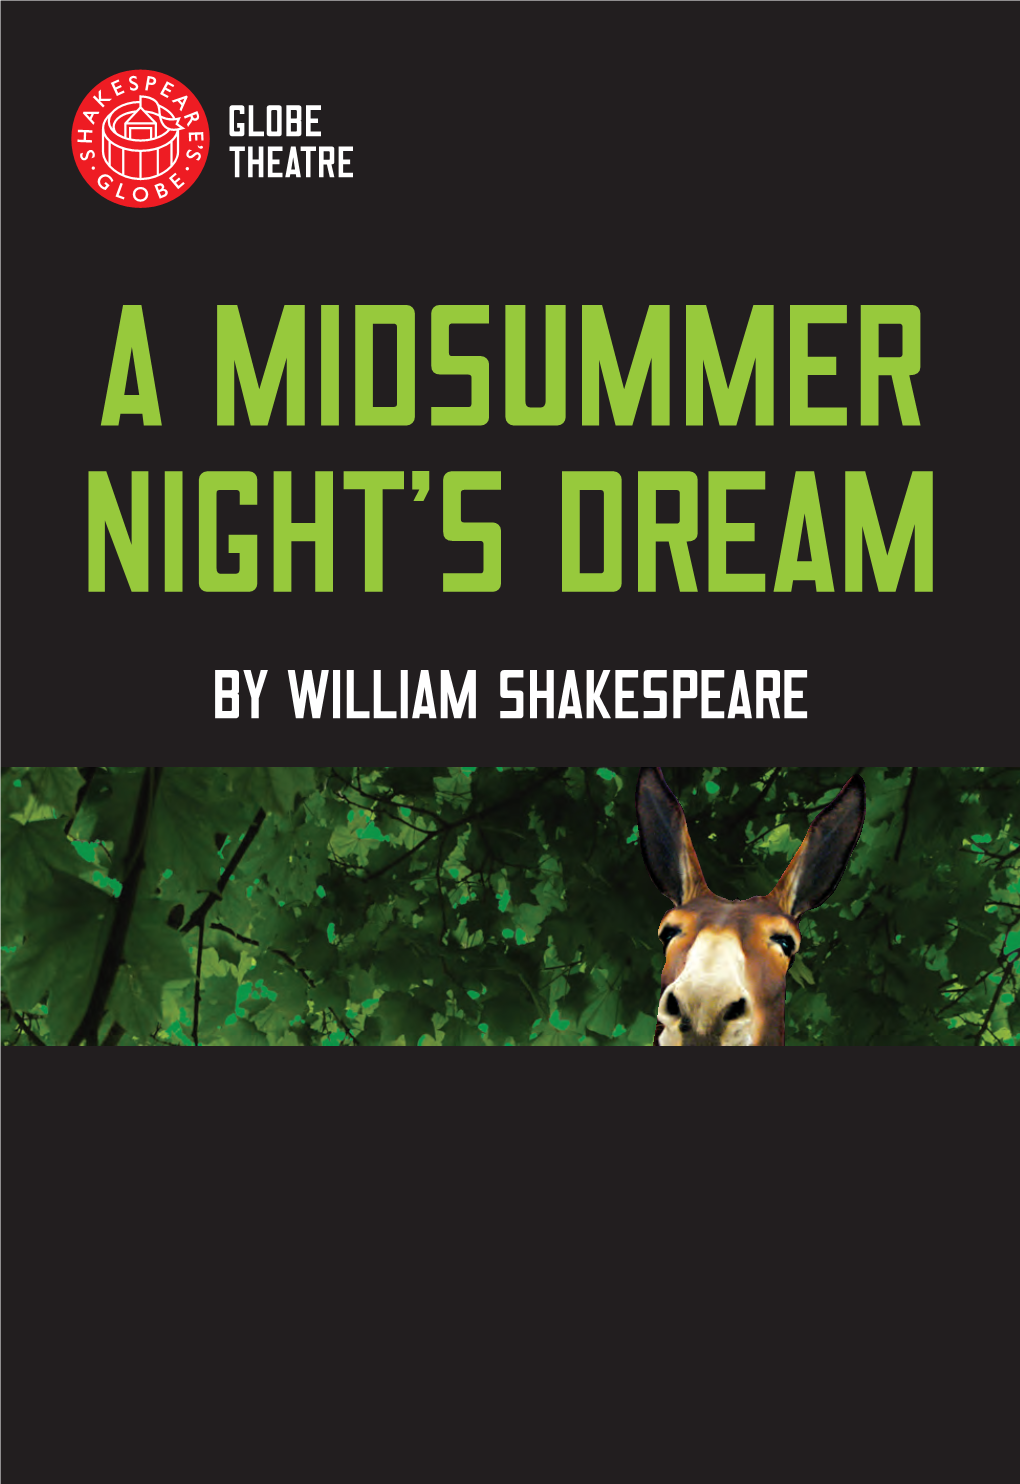 A Midsummer Night's Dream Programme